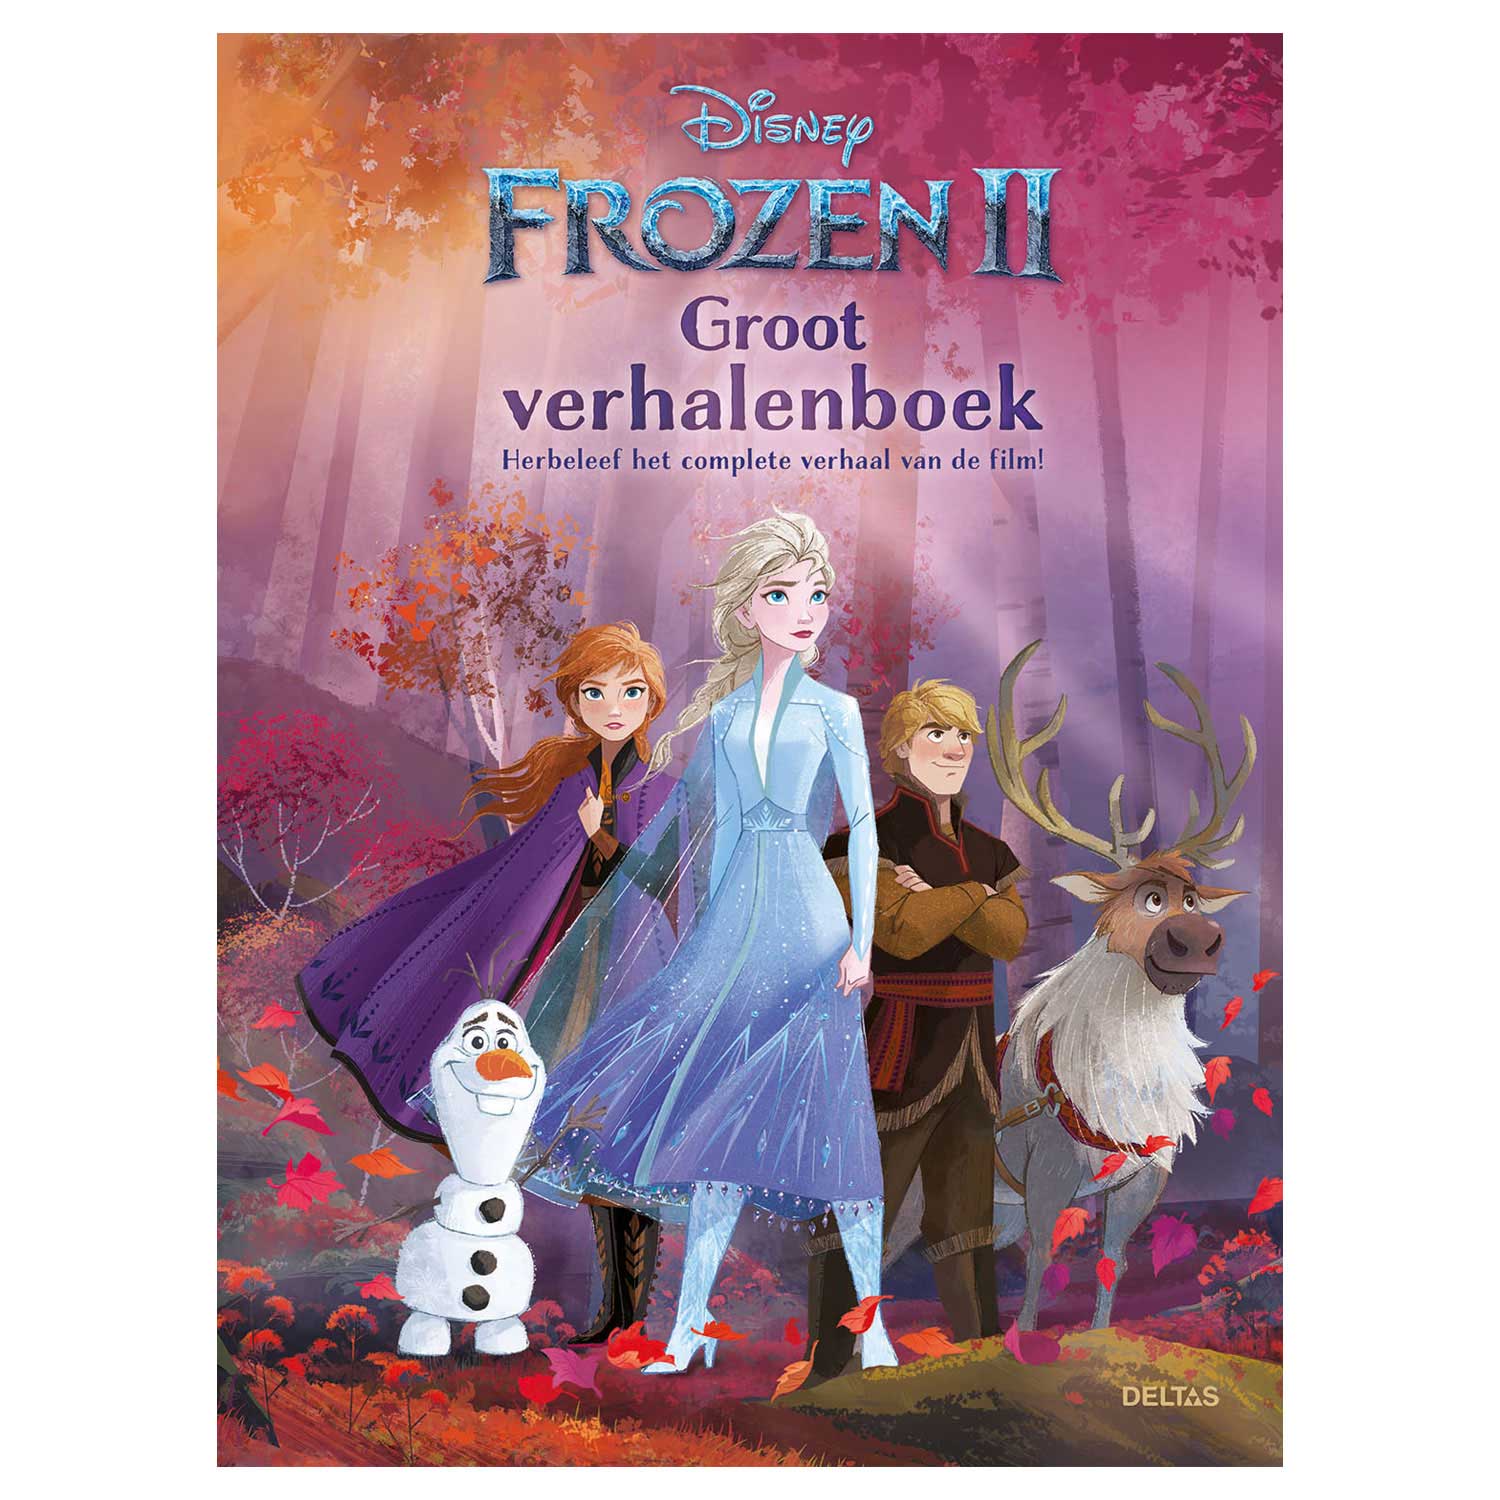 Disney Frozen 2 Groot Verhalenboek